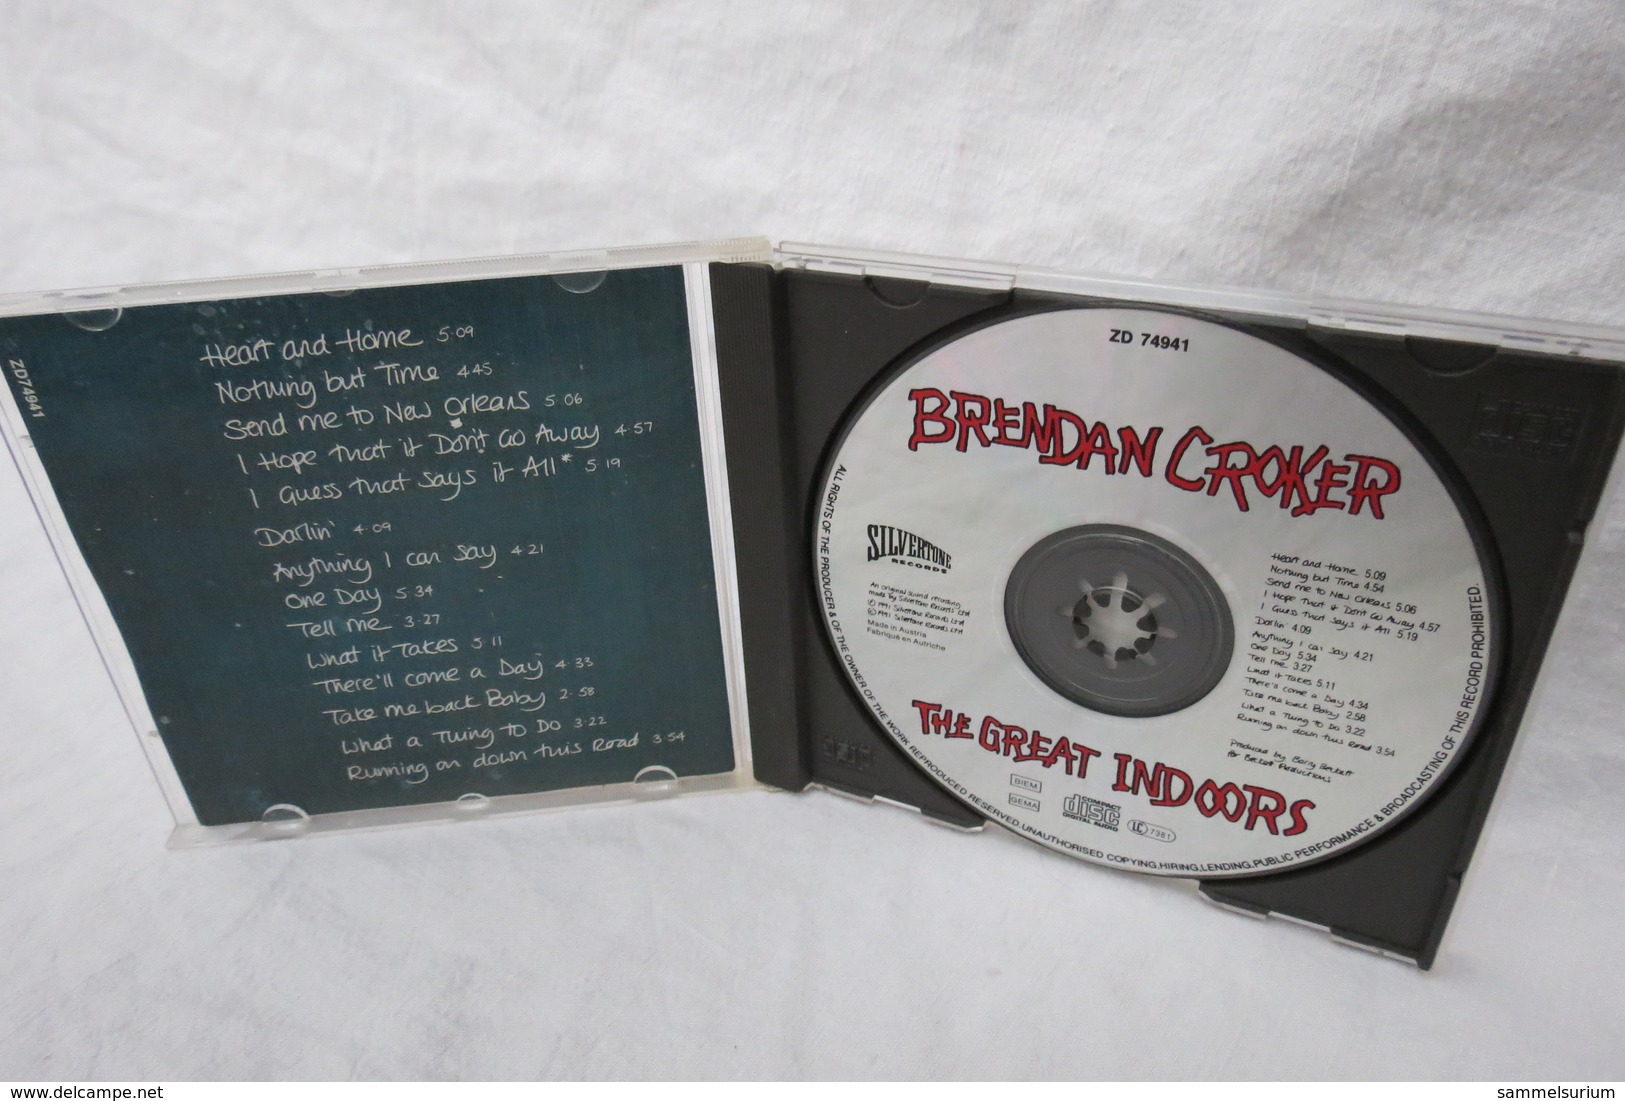 CD "Brendan Croker" The Great Indoors - Rock